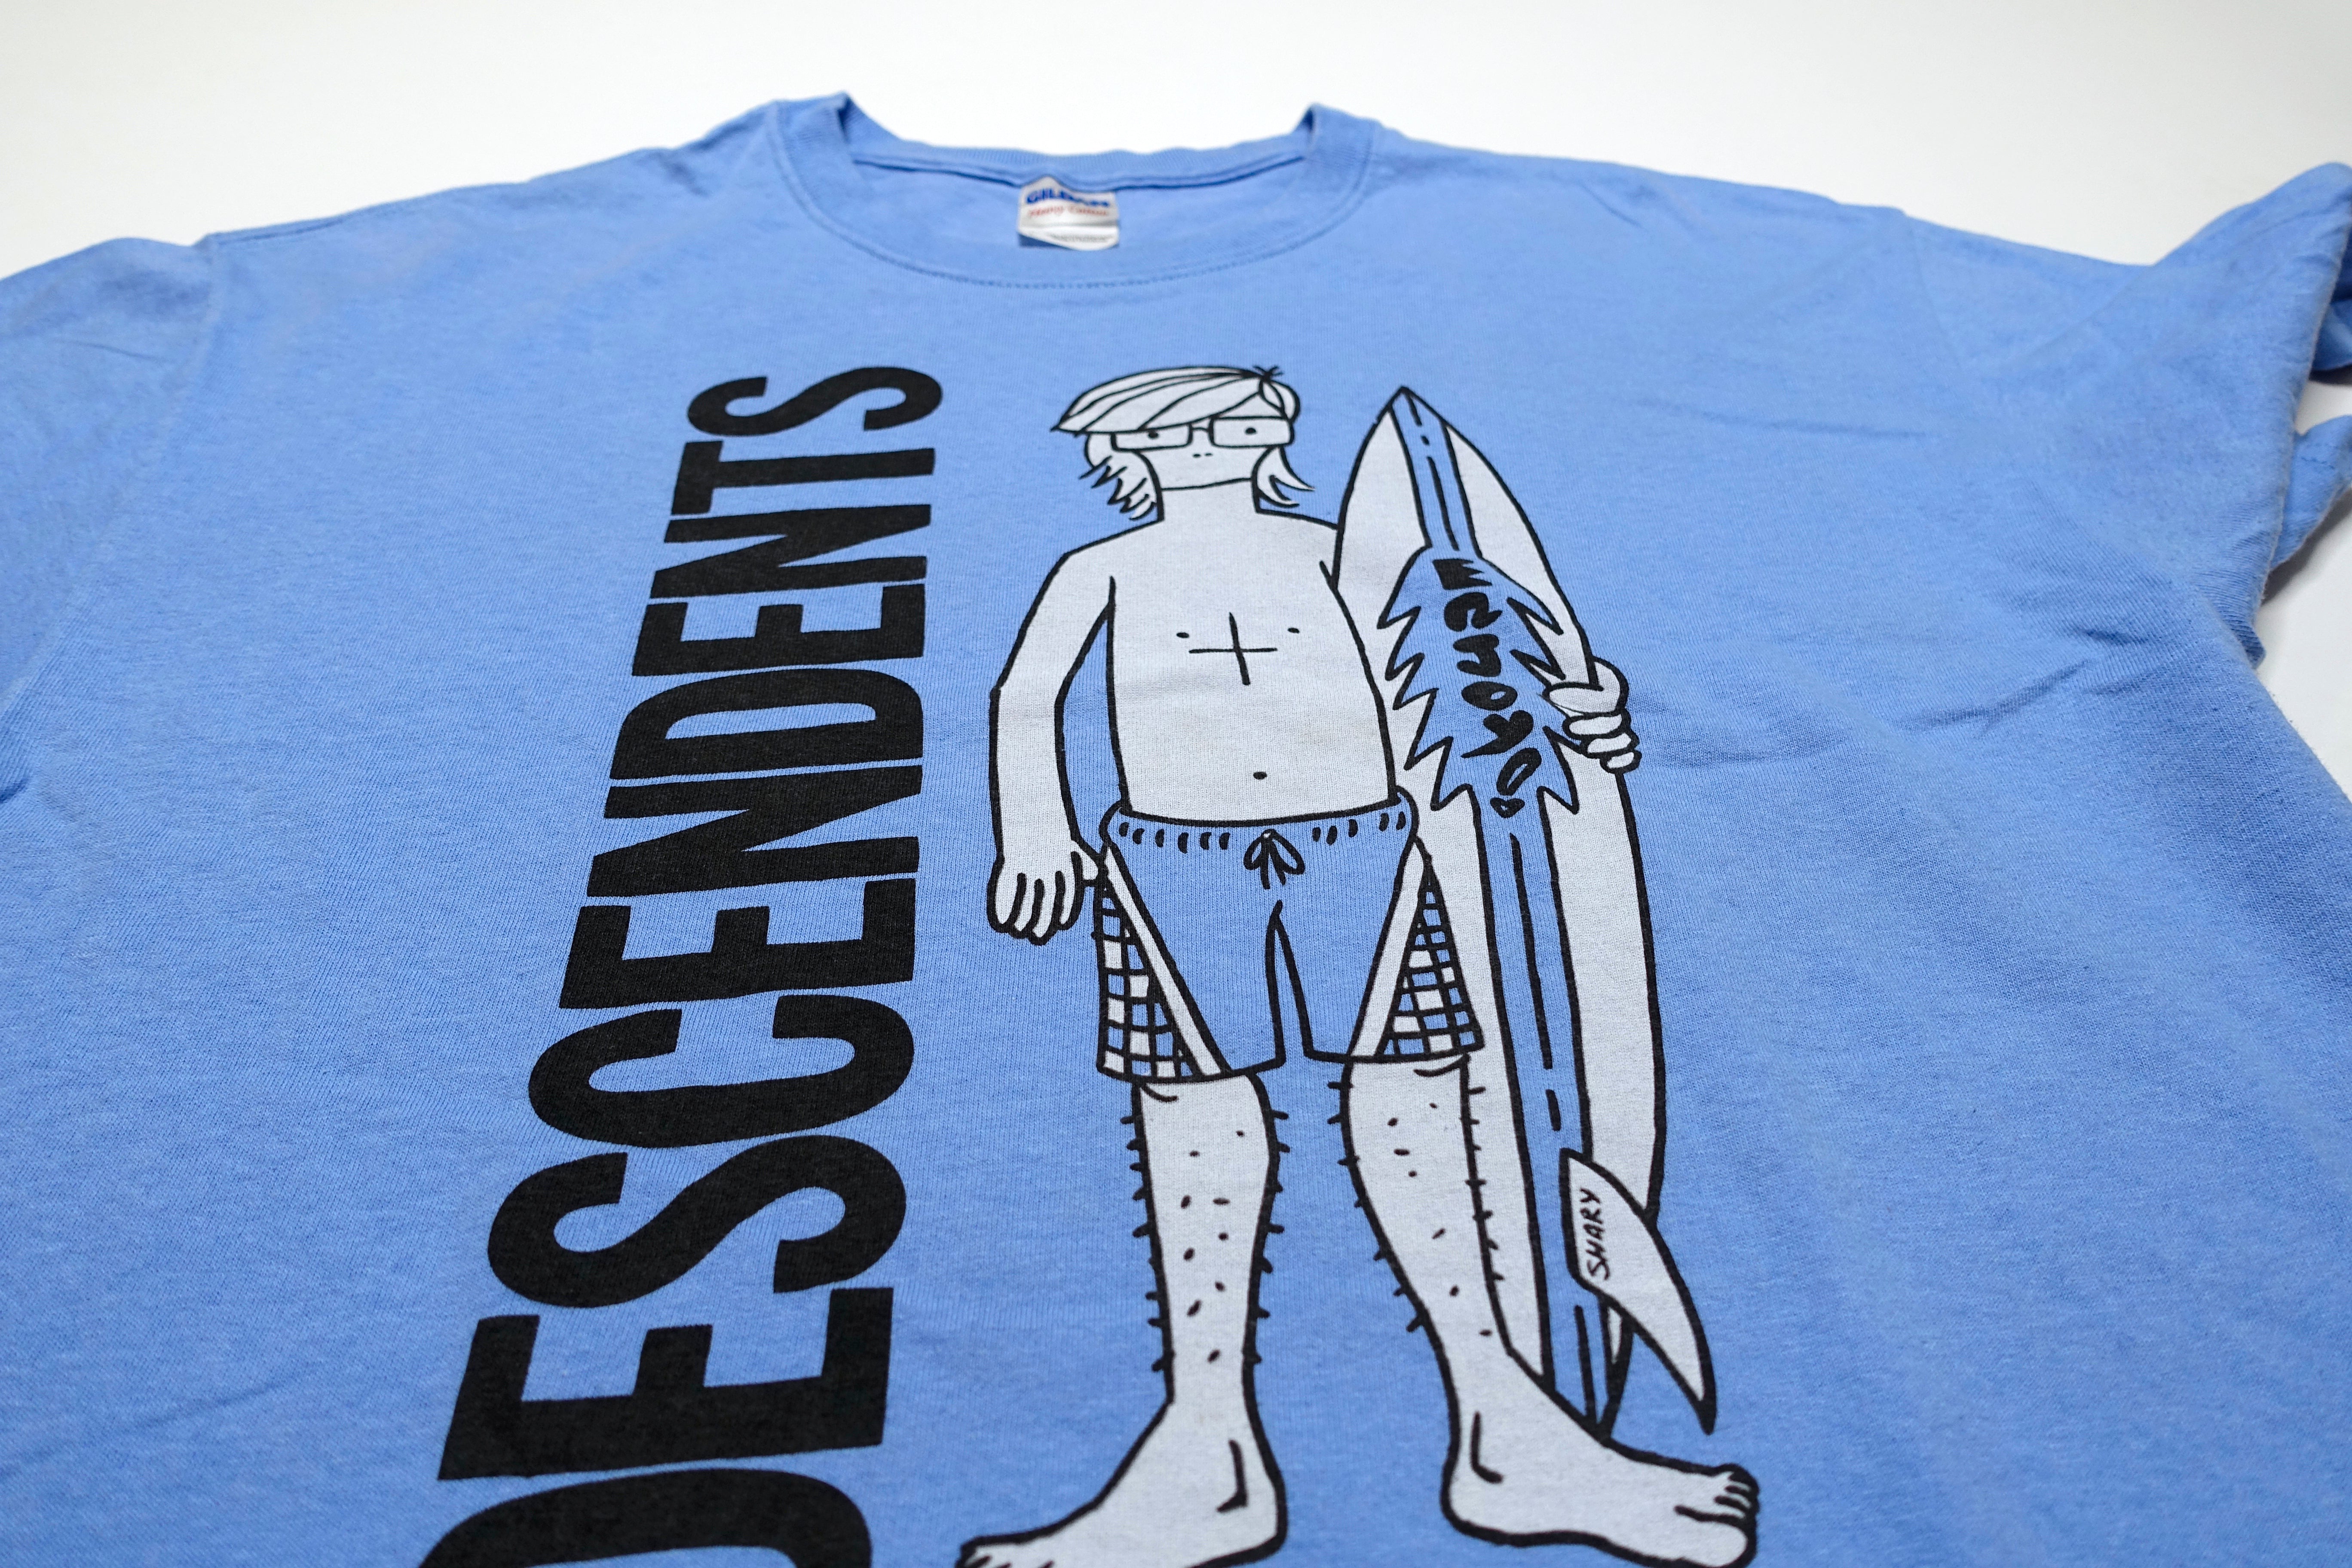 Descendents - Long Beach, CA 2011 Tour Shirt Size Large